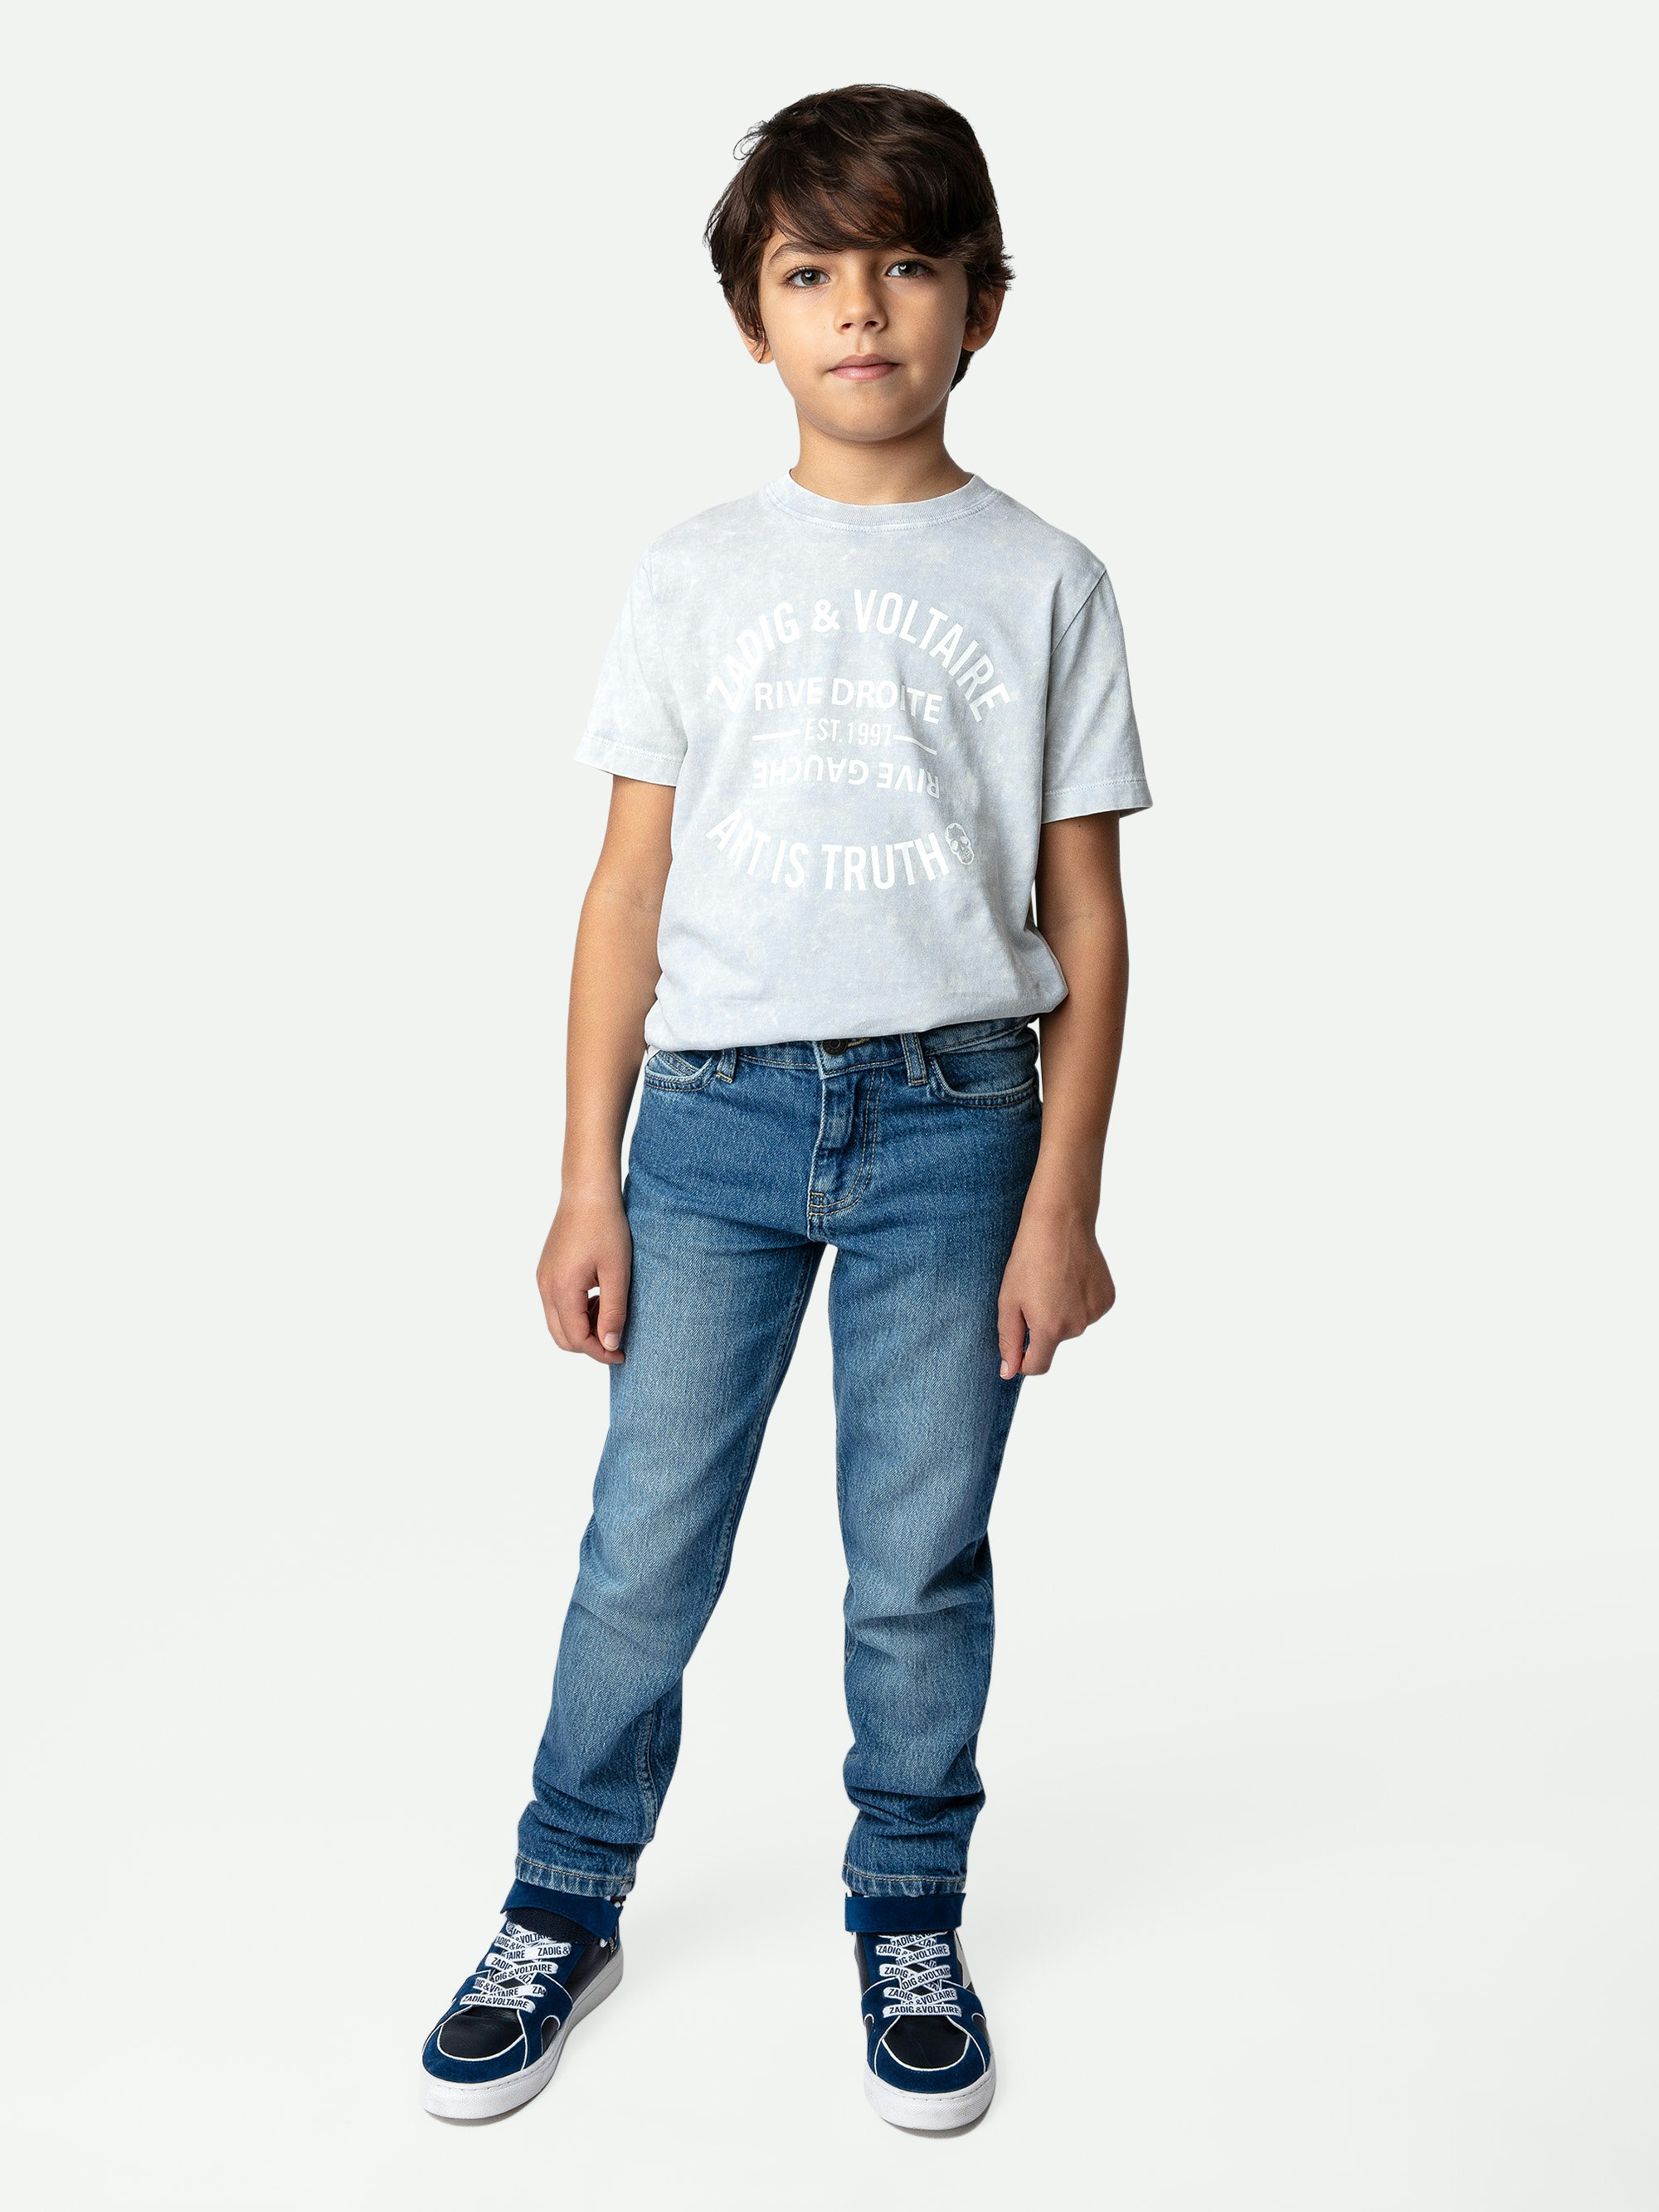 Camiseta Kita Niño - Camiseta de jersey de algodón en color gris con efecto nieve para niño, con mangas cortas y escudo decorativo.